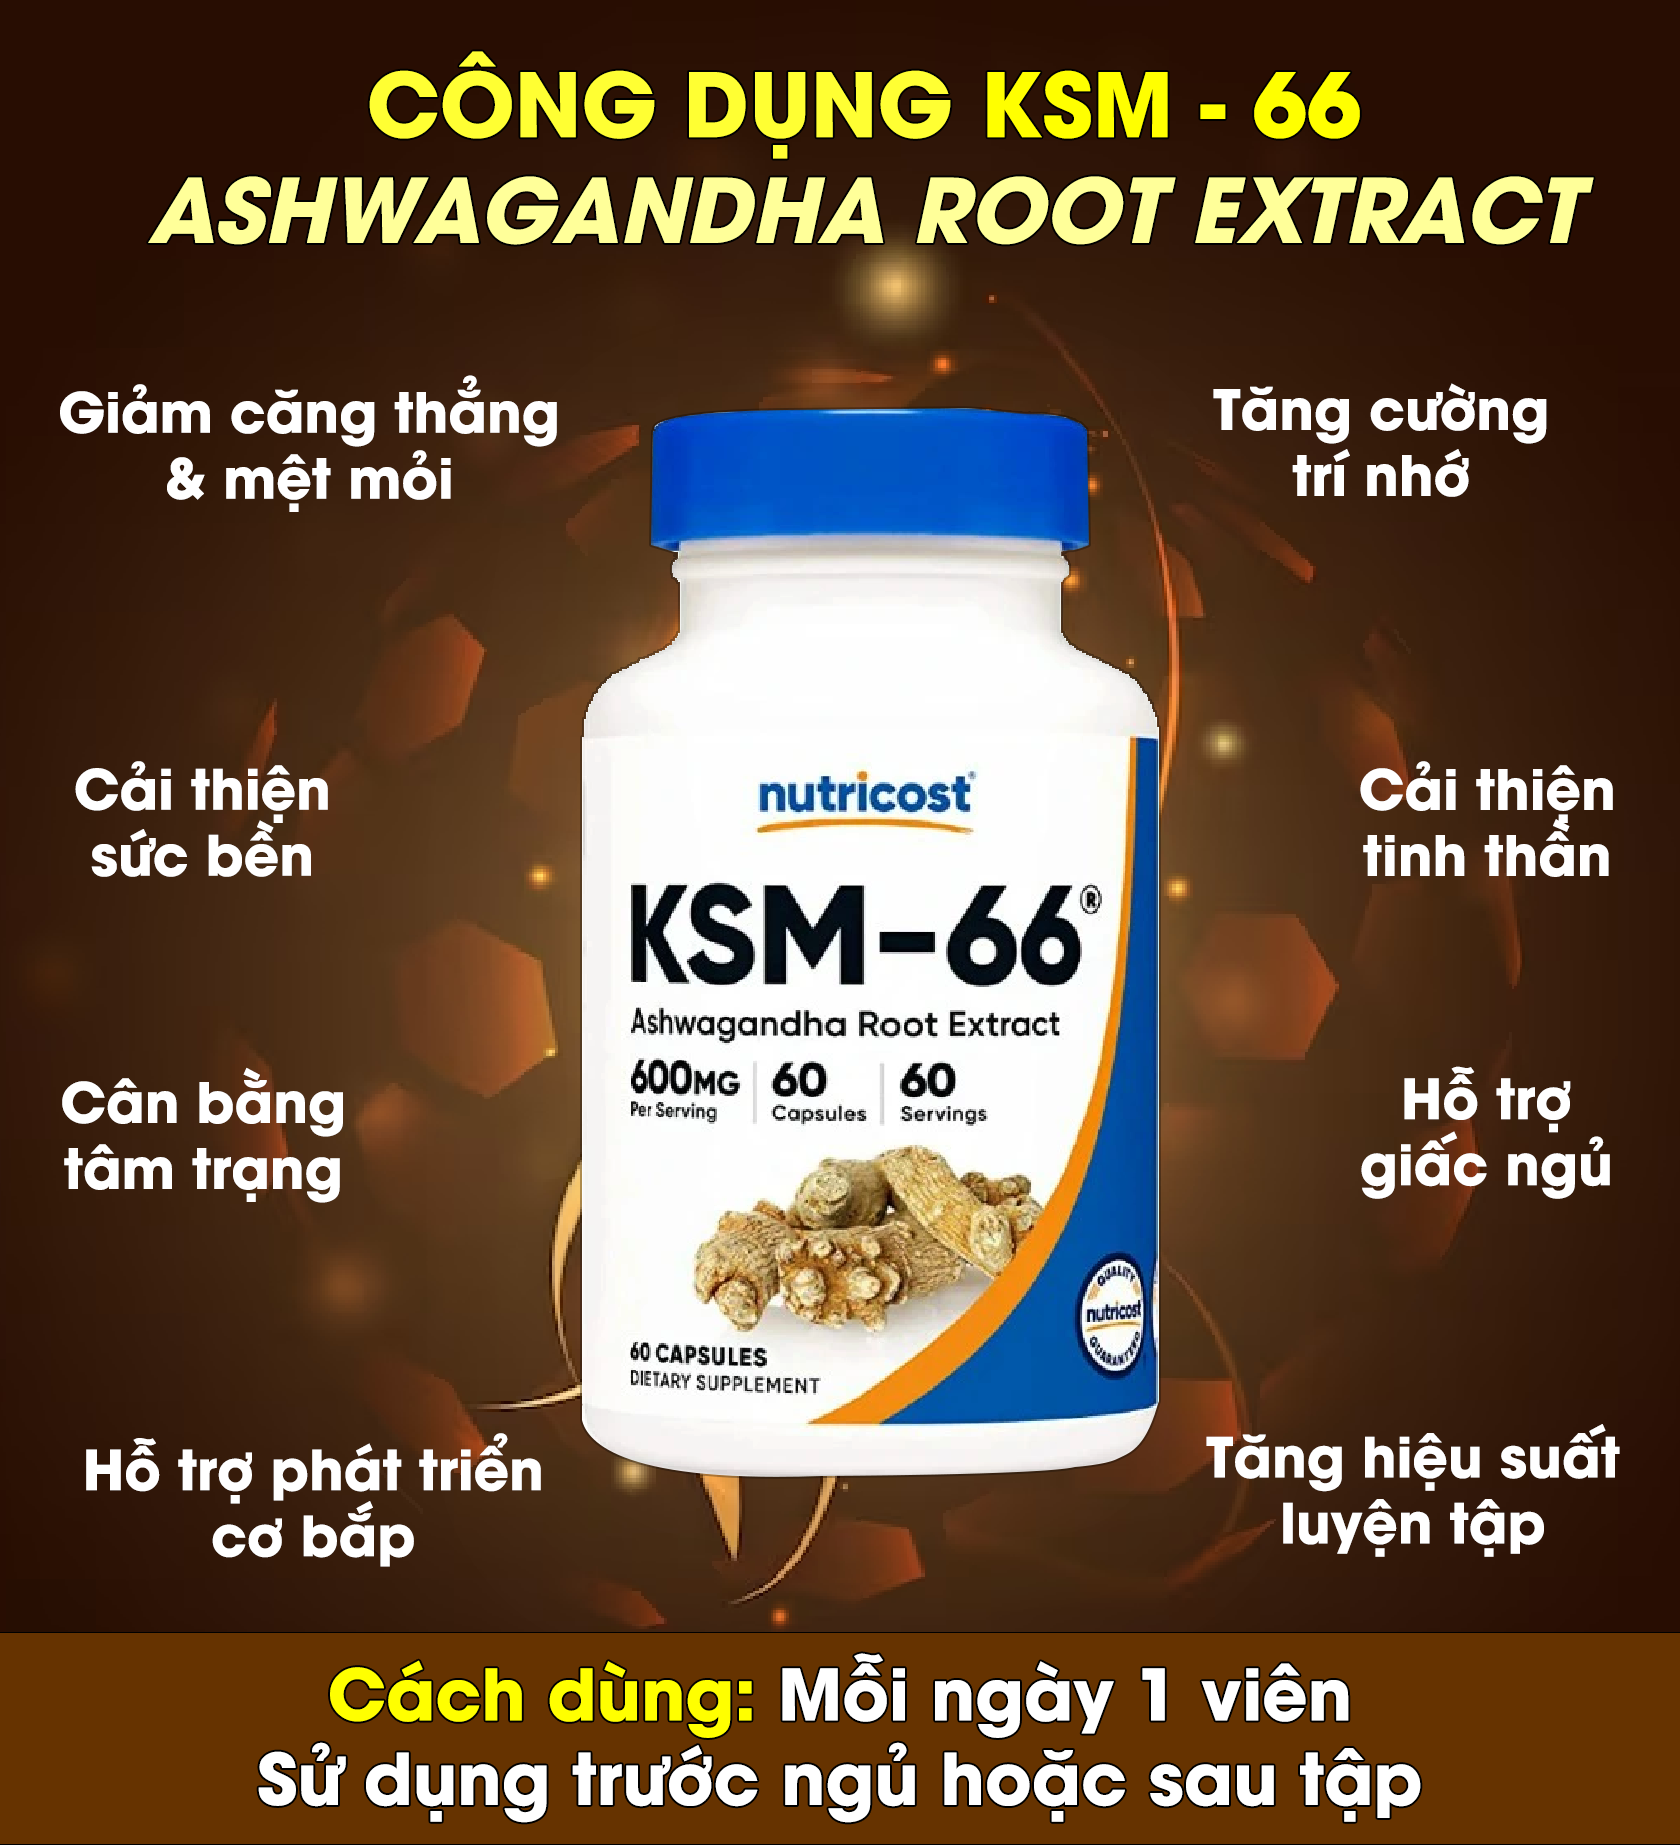 Nutricost KSM-66 Ashwagandha